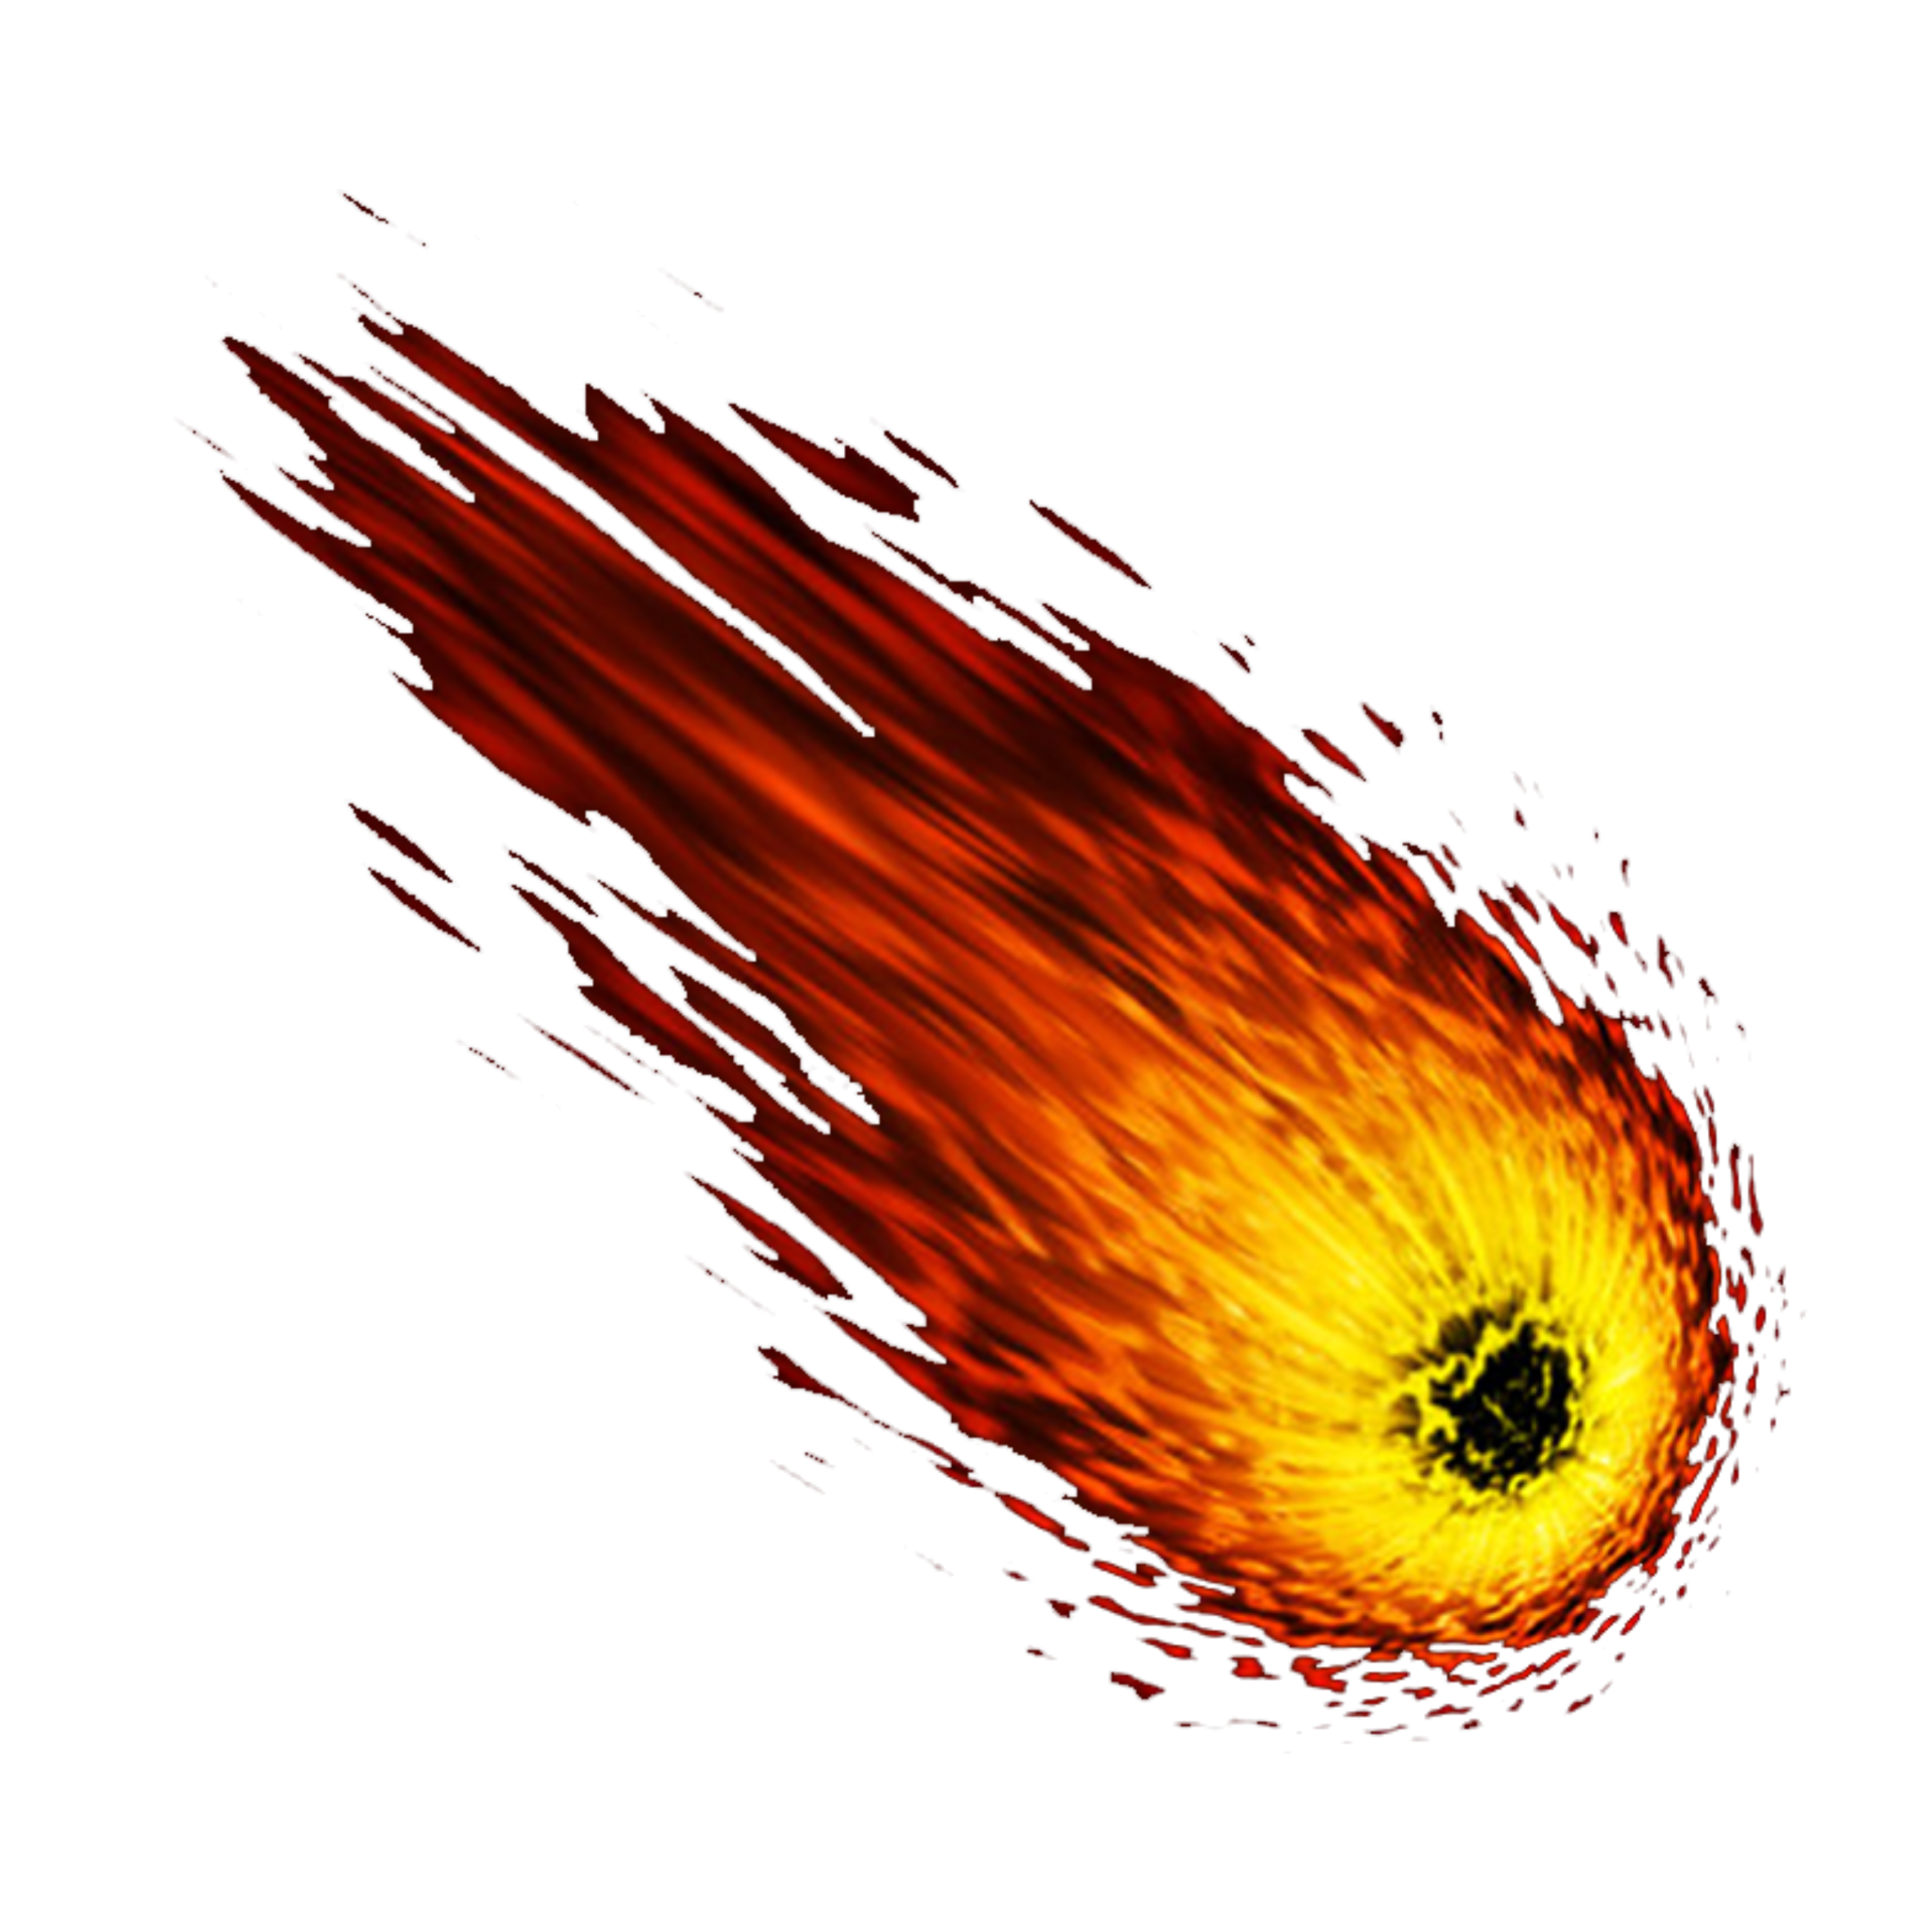 Espacio asteroide PNG imagen de alta calidad